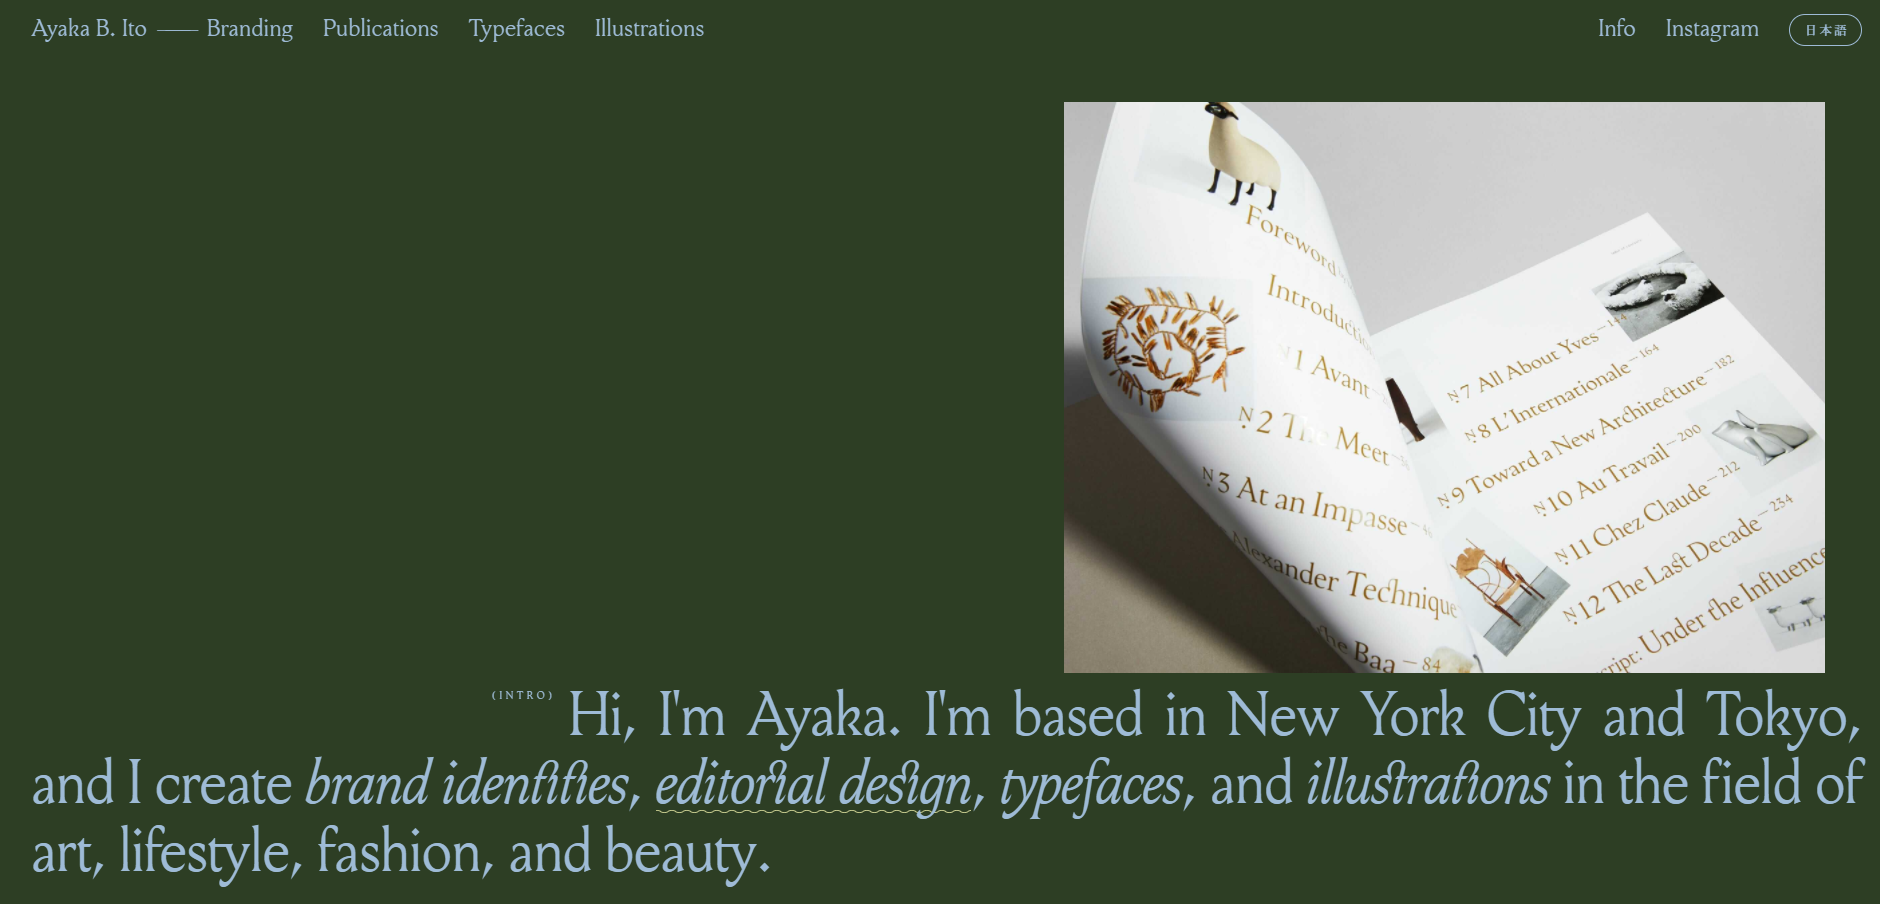 Ayakta Ito - Freelance Graphic Designer Portfolio